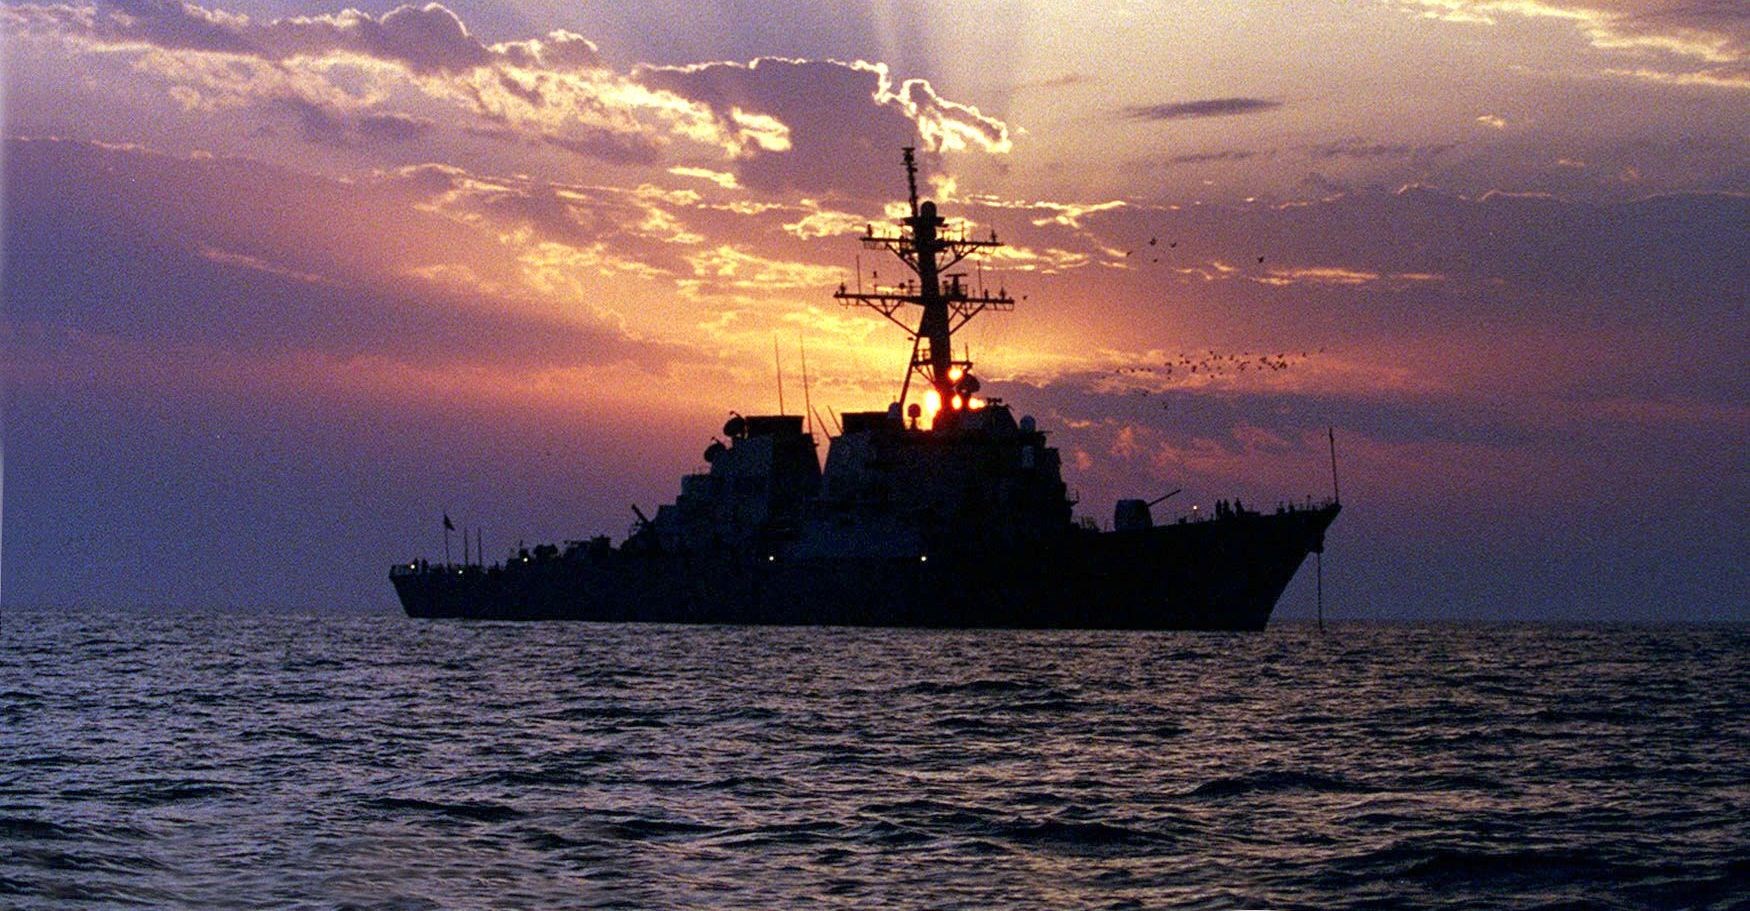 Jemenből kilőtt rakéták három kereskedelmi hajót találtak el, amelyeknek amerikai hadihajó nyújtott segítséget a Vörös-tengeren